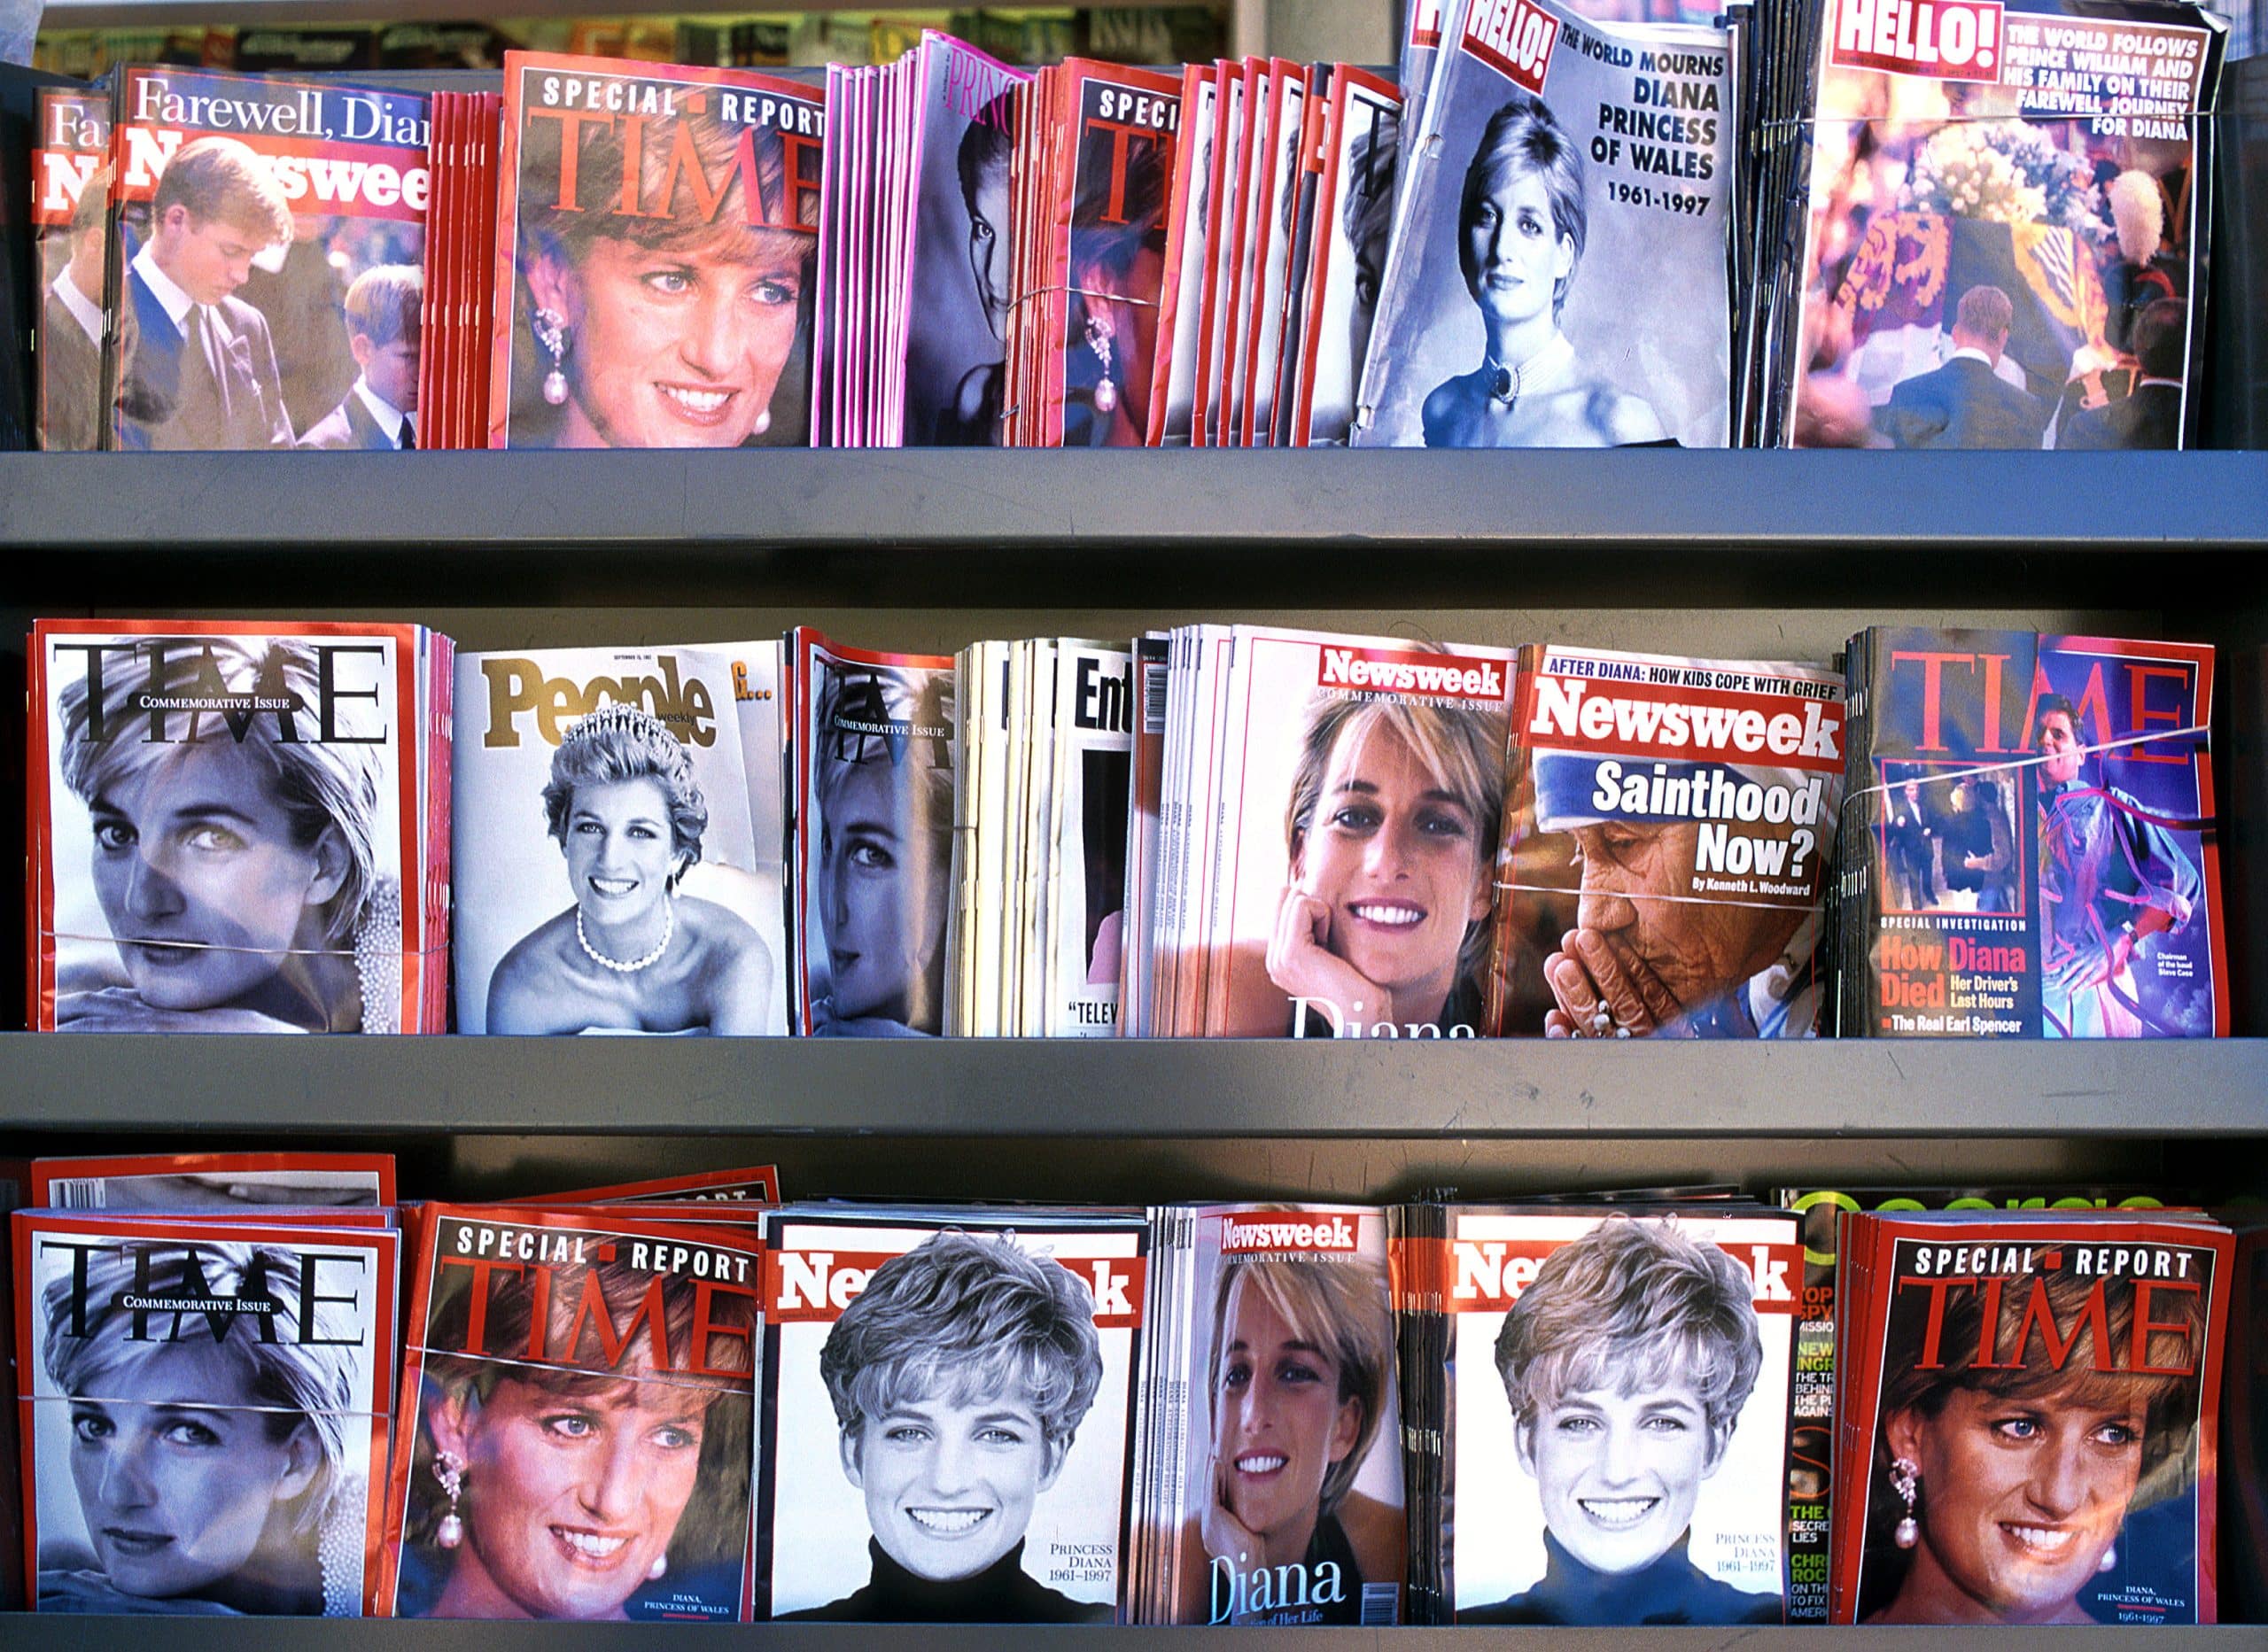 Sono passati 25 anni dalla scomparsa dell'amata principessa Diana